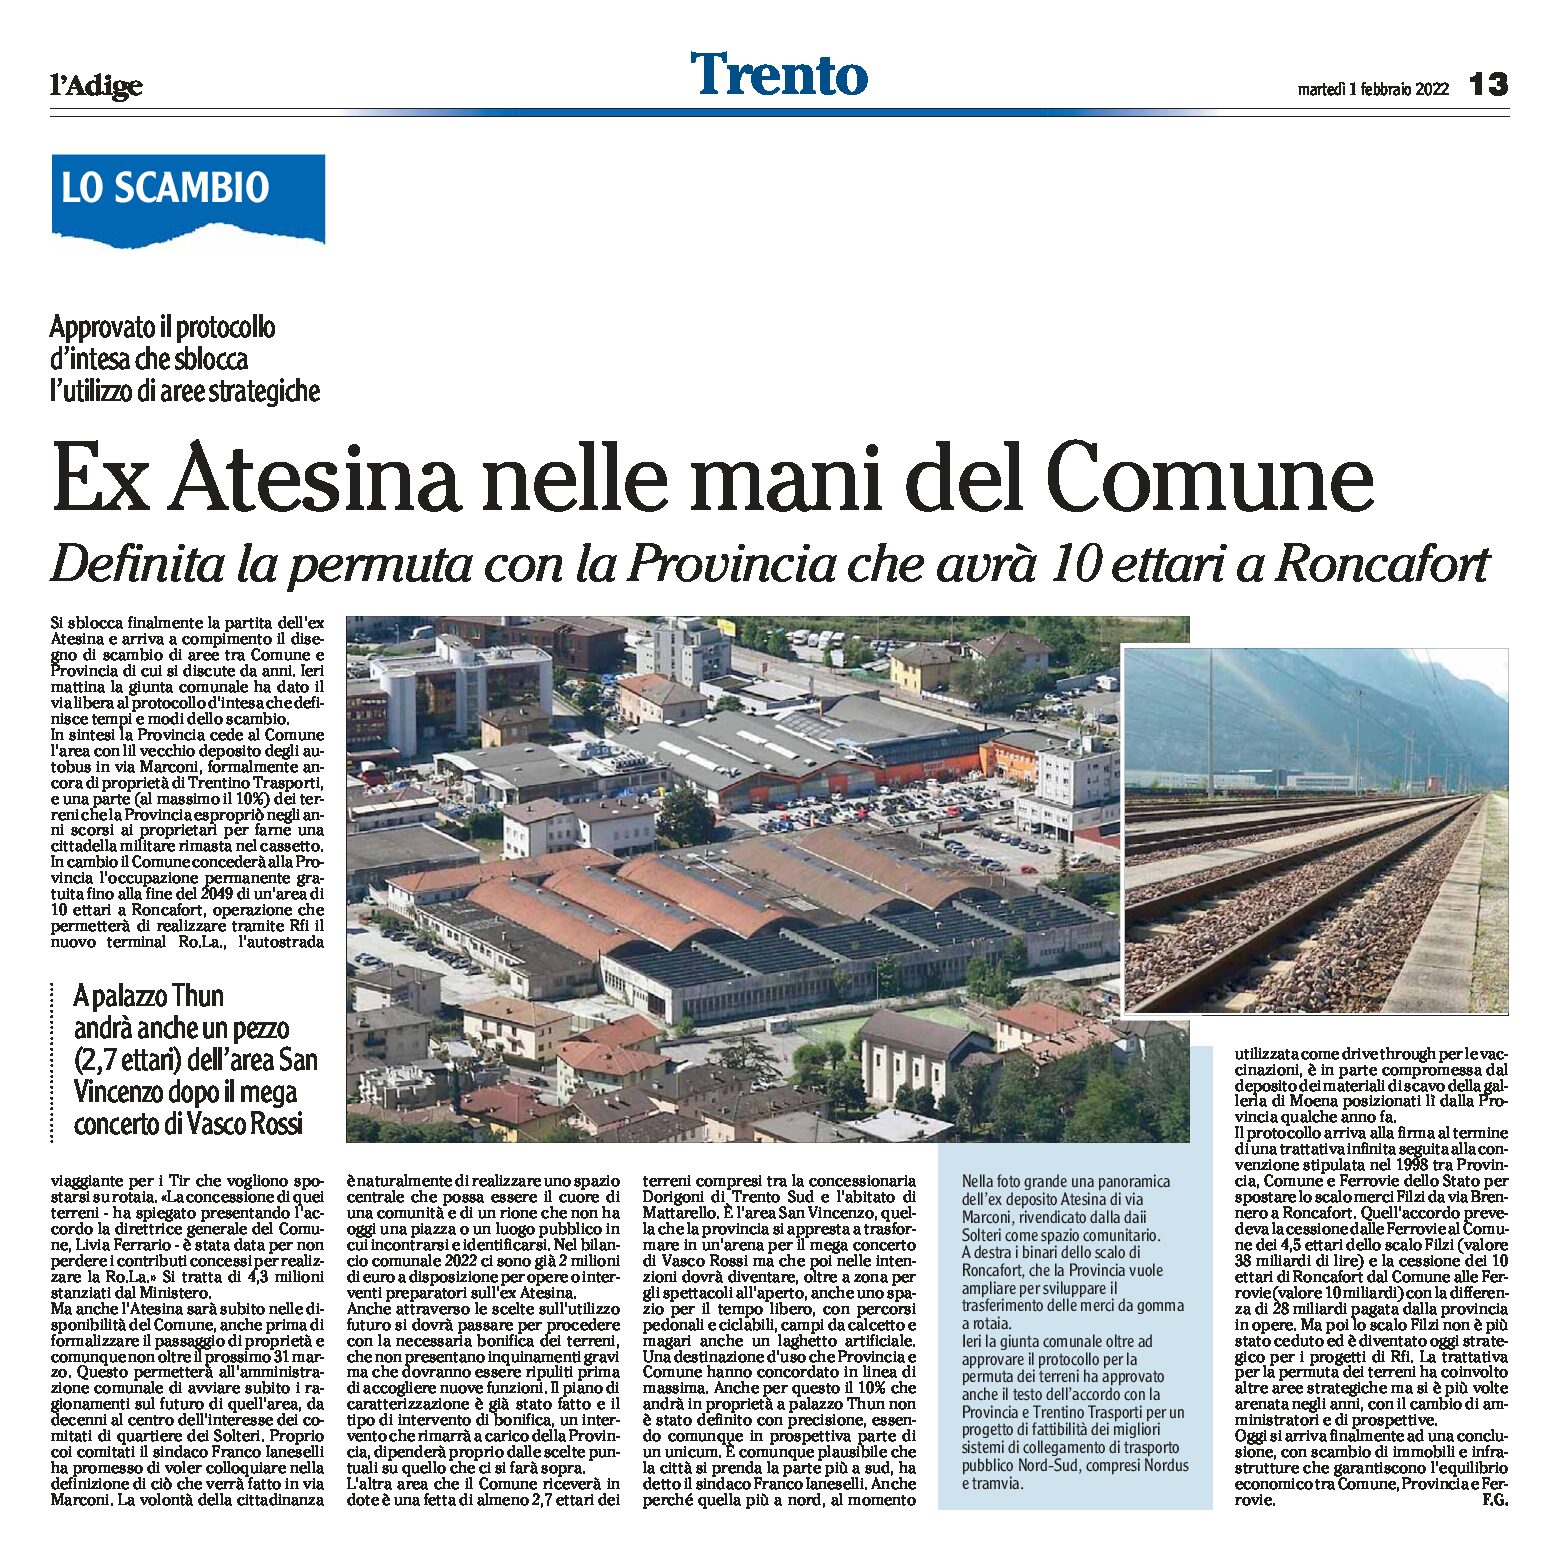 Trento: ex Atesina nelle mani del Comune. Permuta con la Provincia